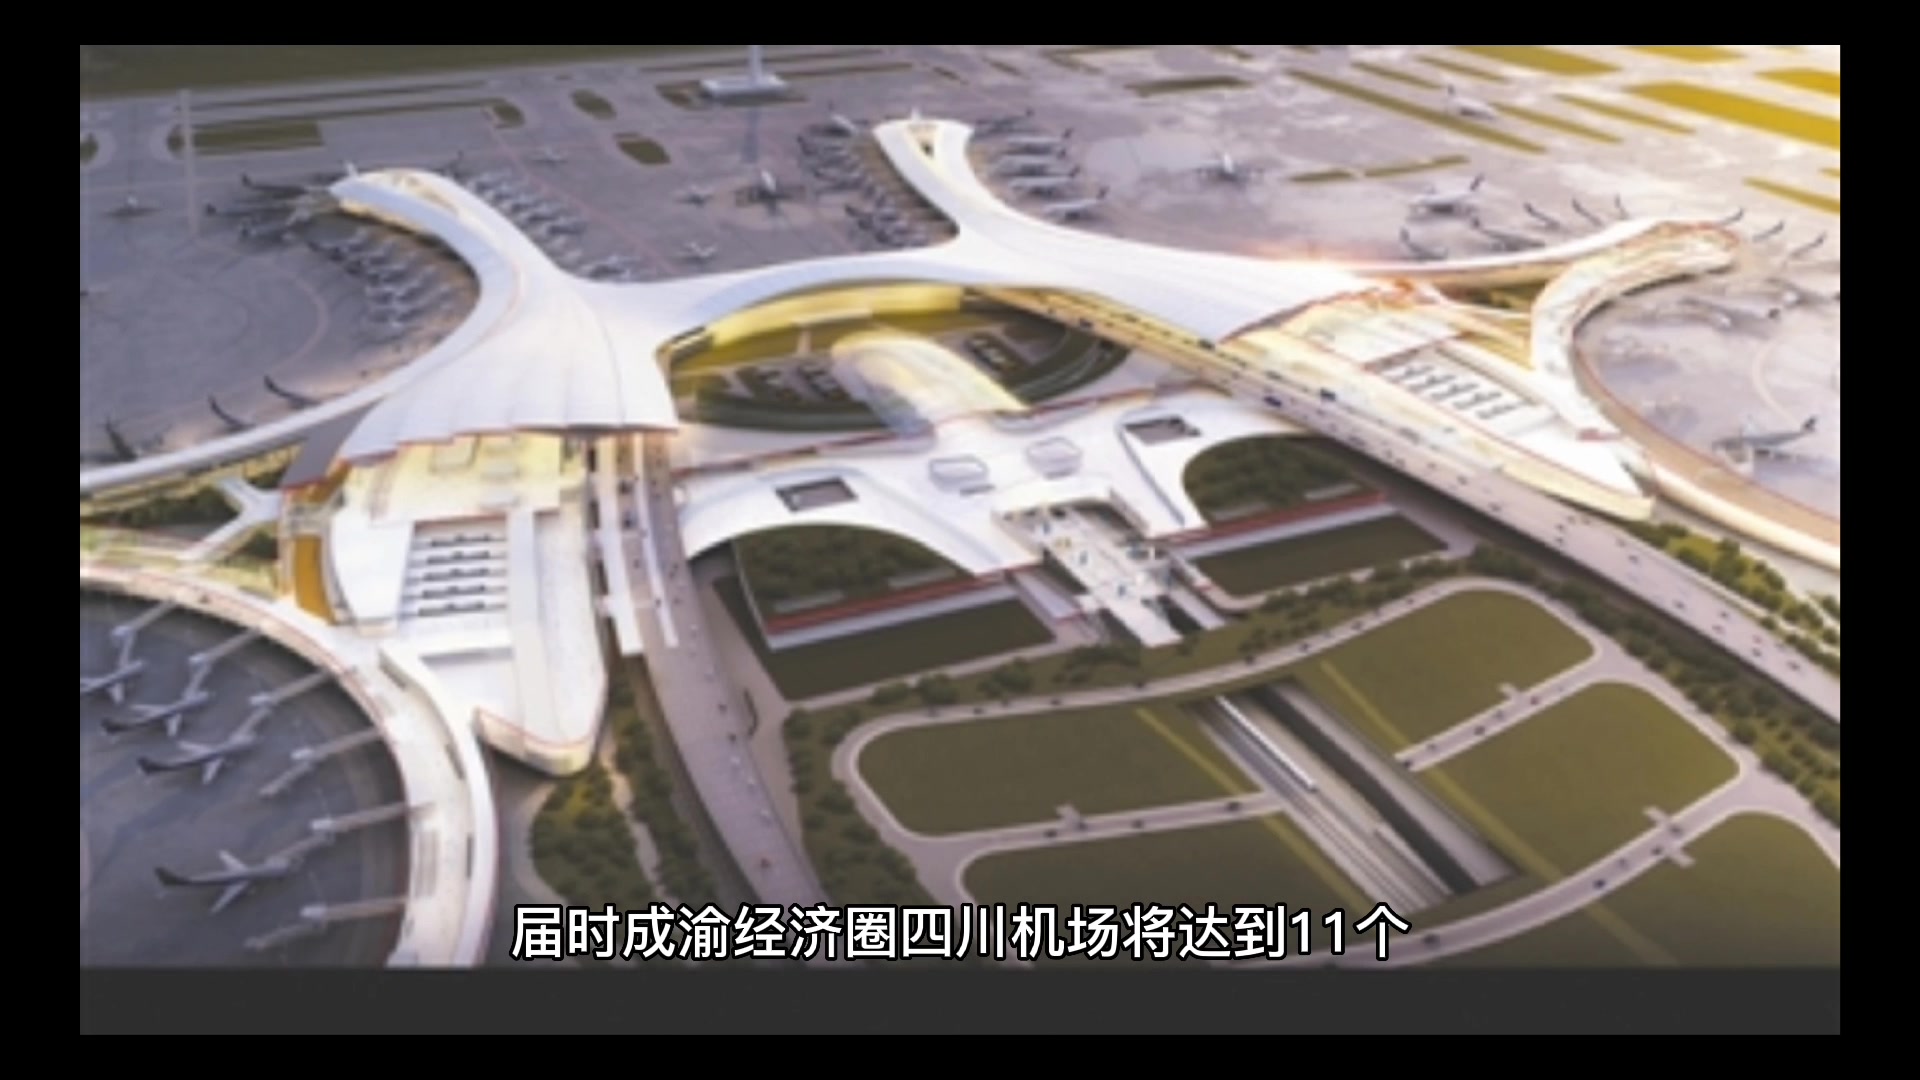 广安机场官方规划图图片